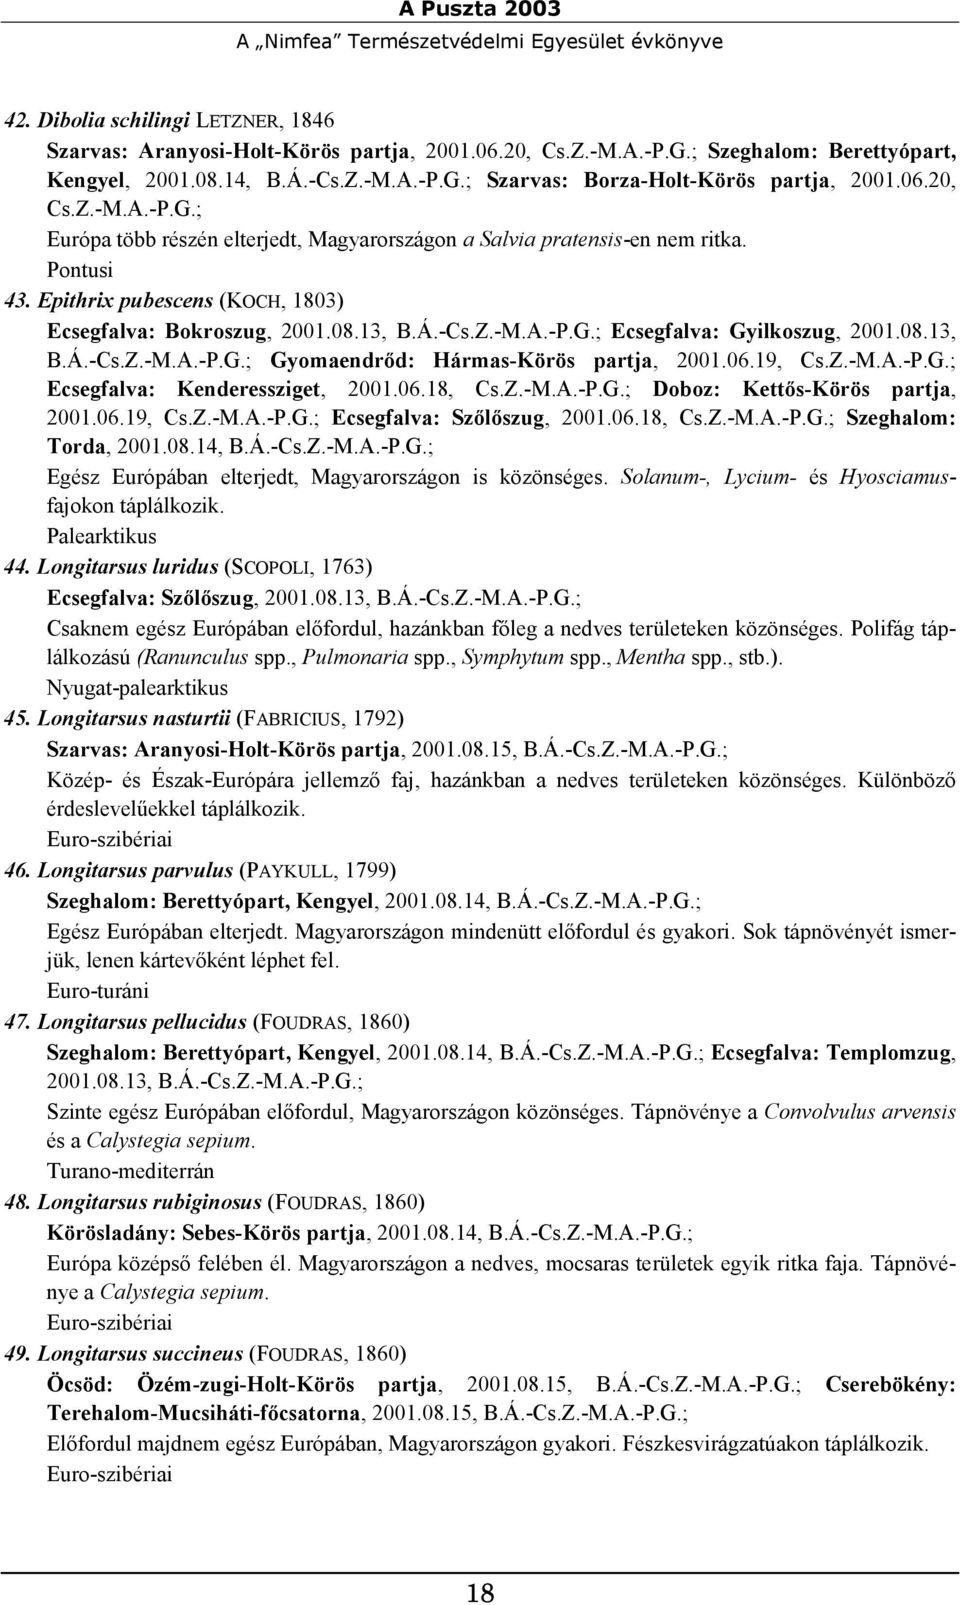 Epithrix pubescens (KOCH, 1803) Ecsegfalva: Bokroszug, 2001.08.13, B.Á.-Cs.Z.-M.A.-P.G.; Ecsegfalva: Gyilkoszug, 2001.08.13, B.Á.-Cs.Z.-M.A.-P.G.; Gyomaendrőd: Hármas-Körös partja, 2001.06.19, Cs.Z.-M.A.-P.G.; Ecsegfalva: Kenderessziget, 2001.